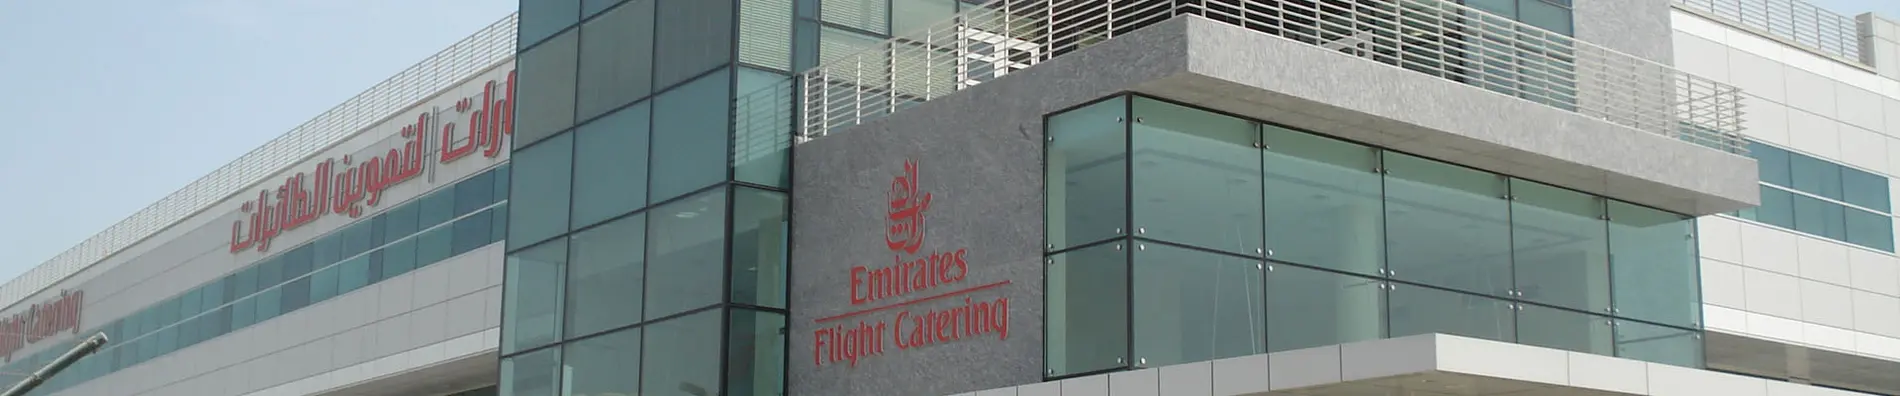 Emirates-Flight Catering Aussenansicht Gebäude